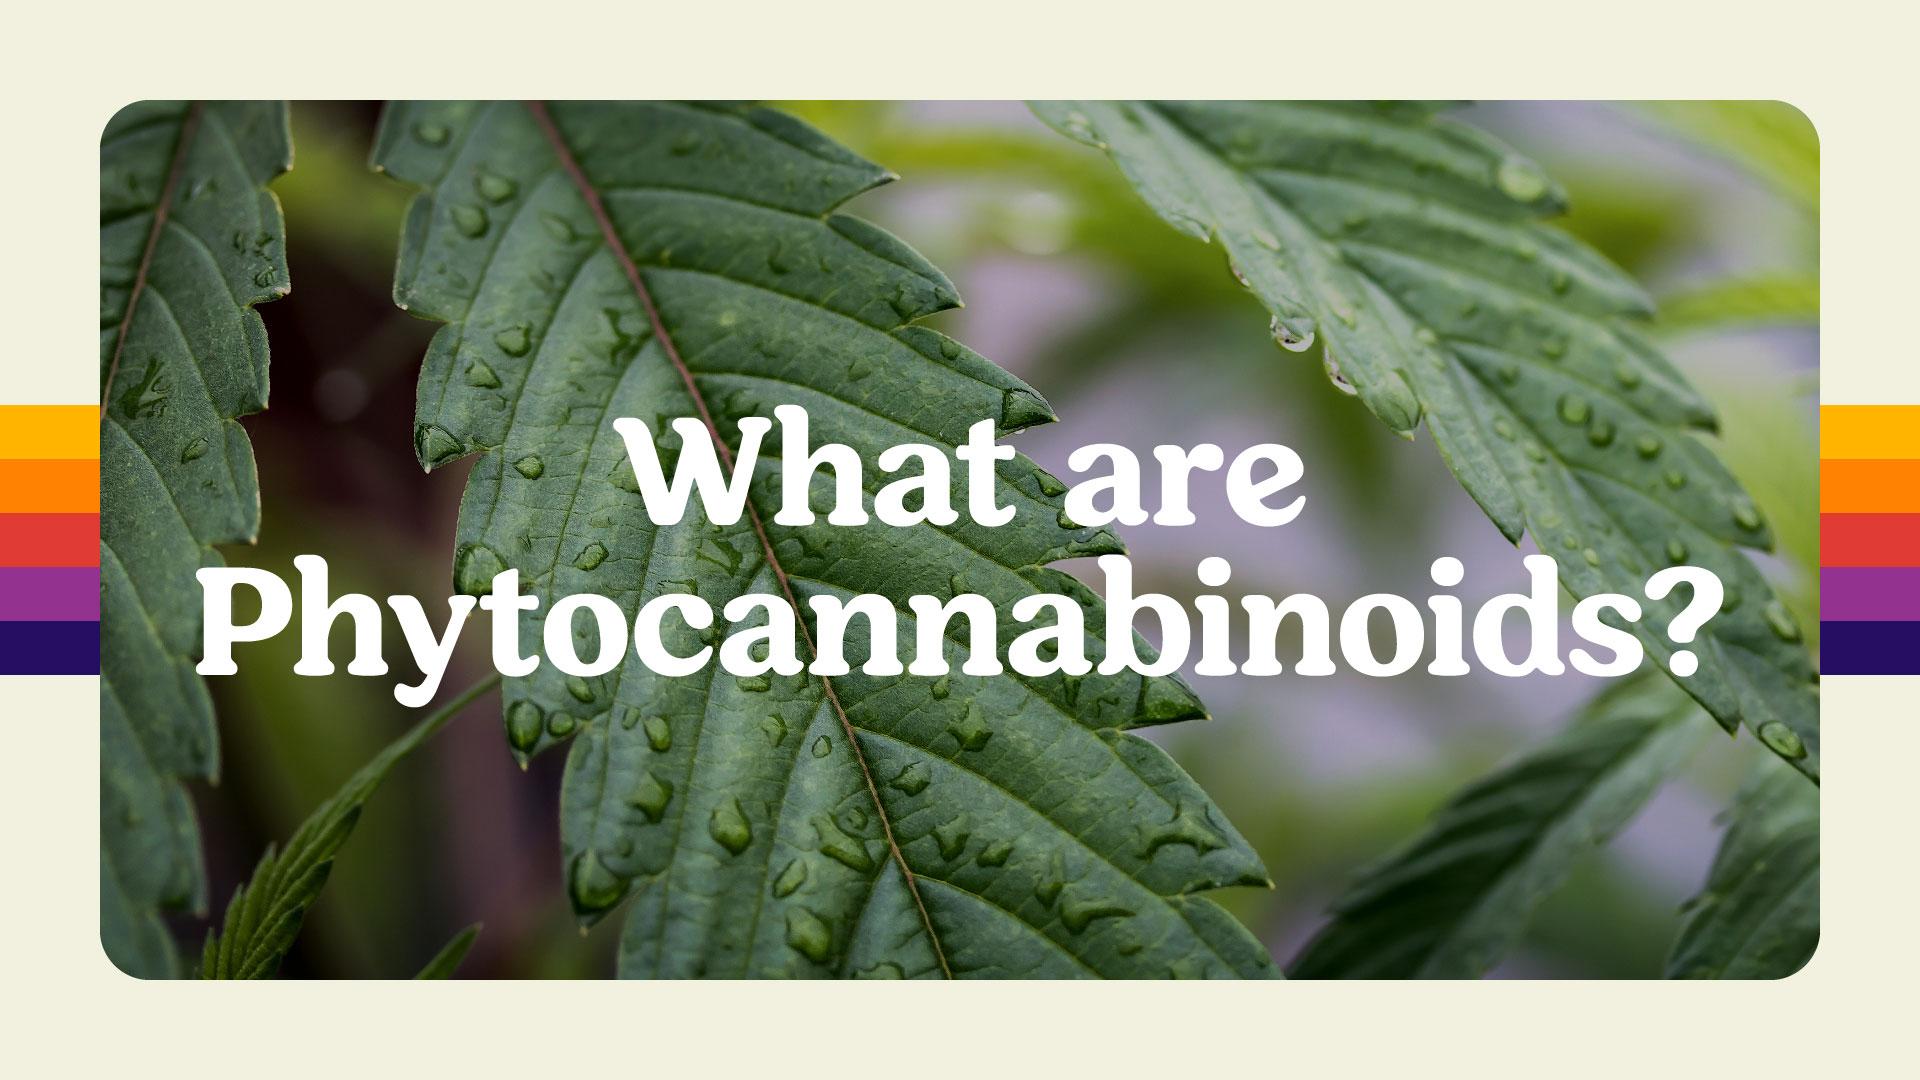 What are Phytocannabinoids?